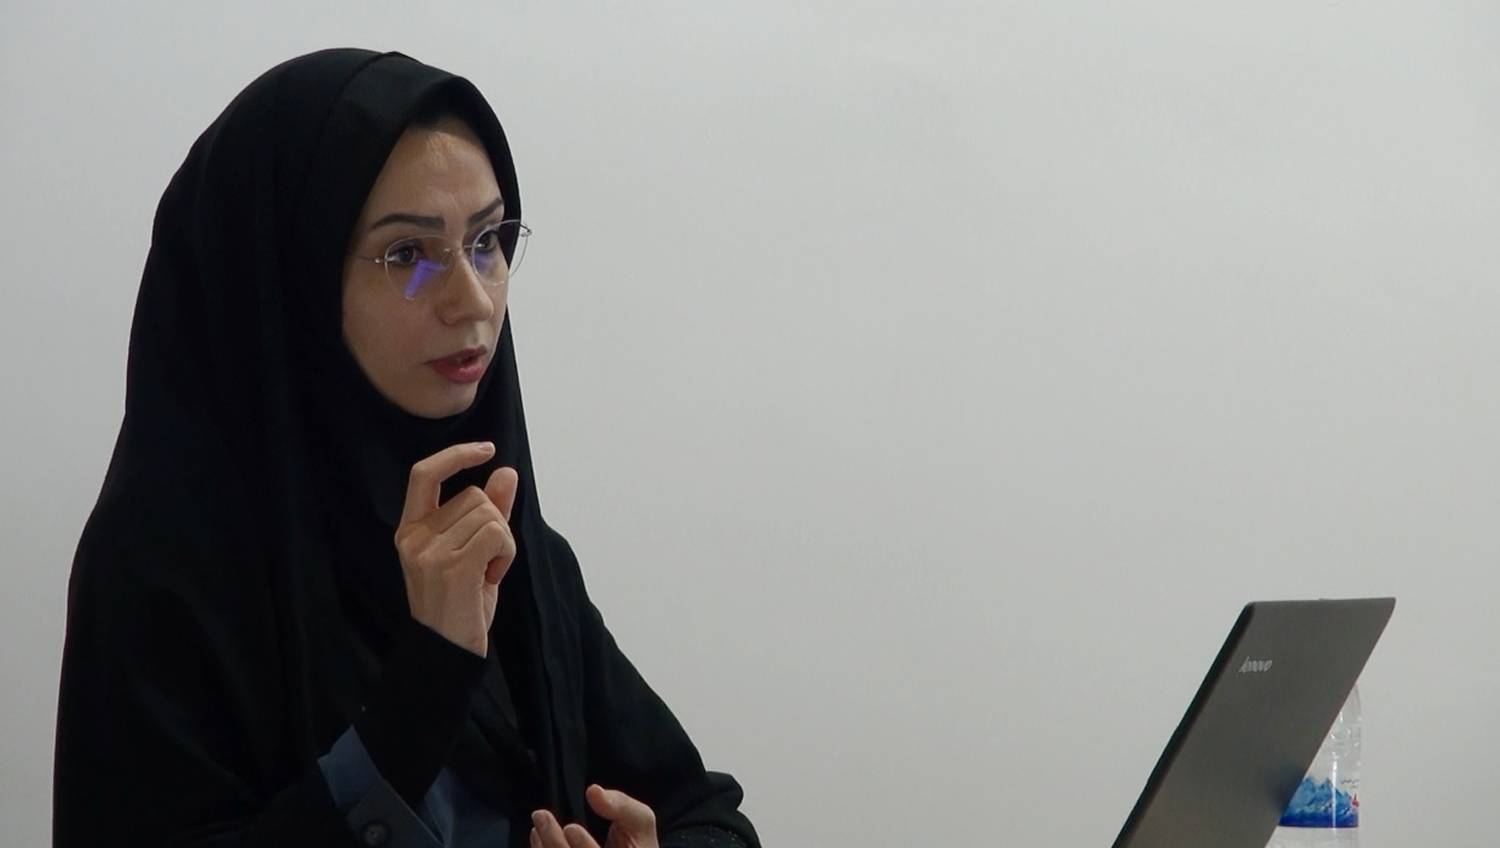 دفاع از پایان نامه همسر شهید در دانشگاه آزاد شهرکرد